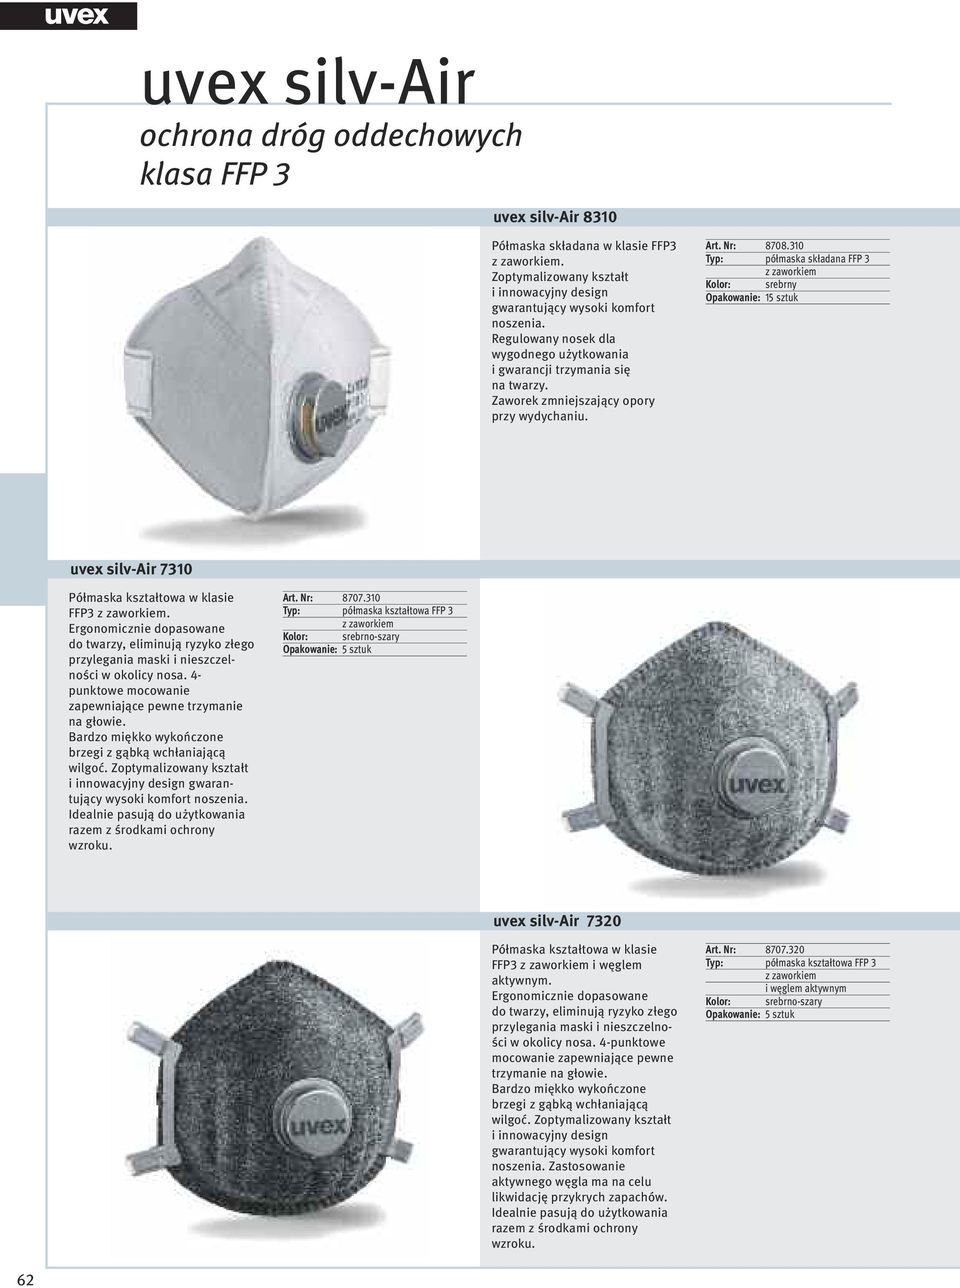 gwarantujący wysoki komfort wzroku. Art. Nr: 8707.310 Typ: półmaska kształtowa FFP 3 Opakowanie: sztuk uvex silv-air 7320 FFP3 i węglem aktywnym.